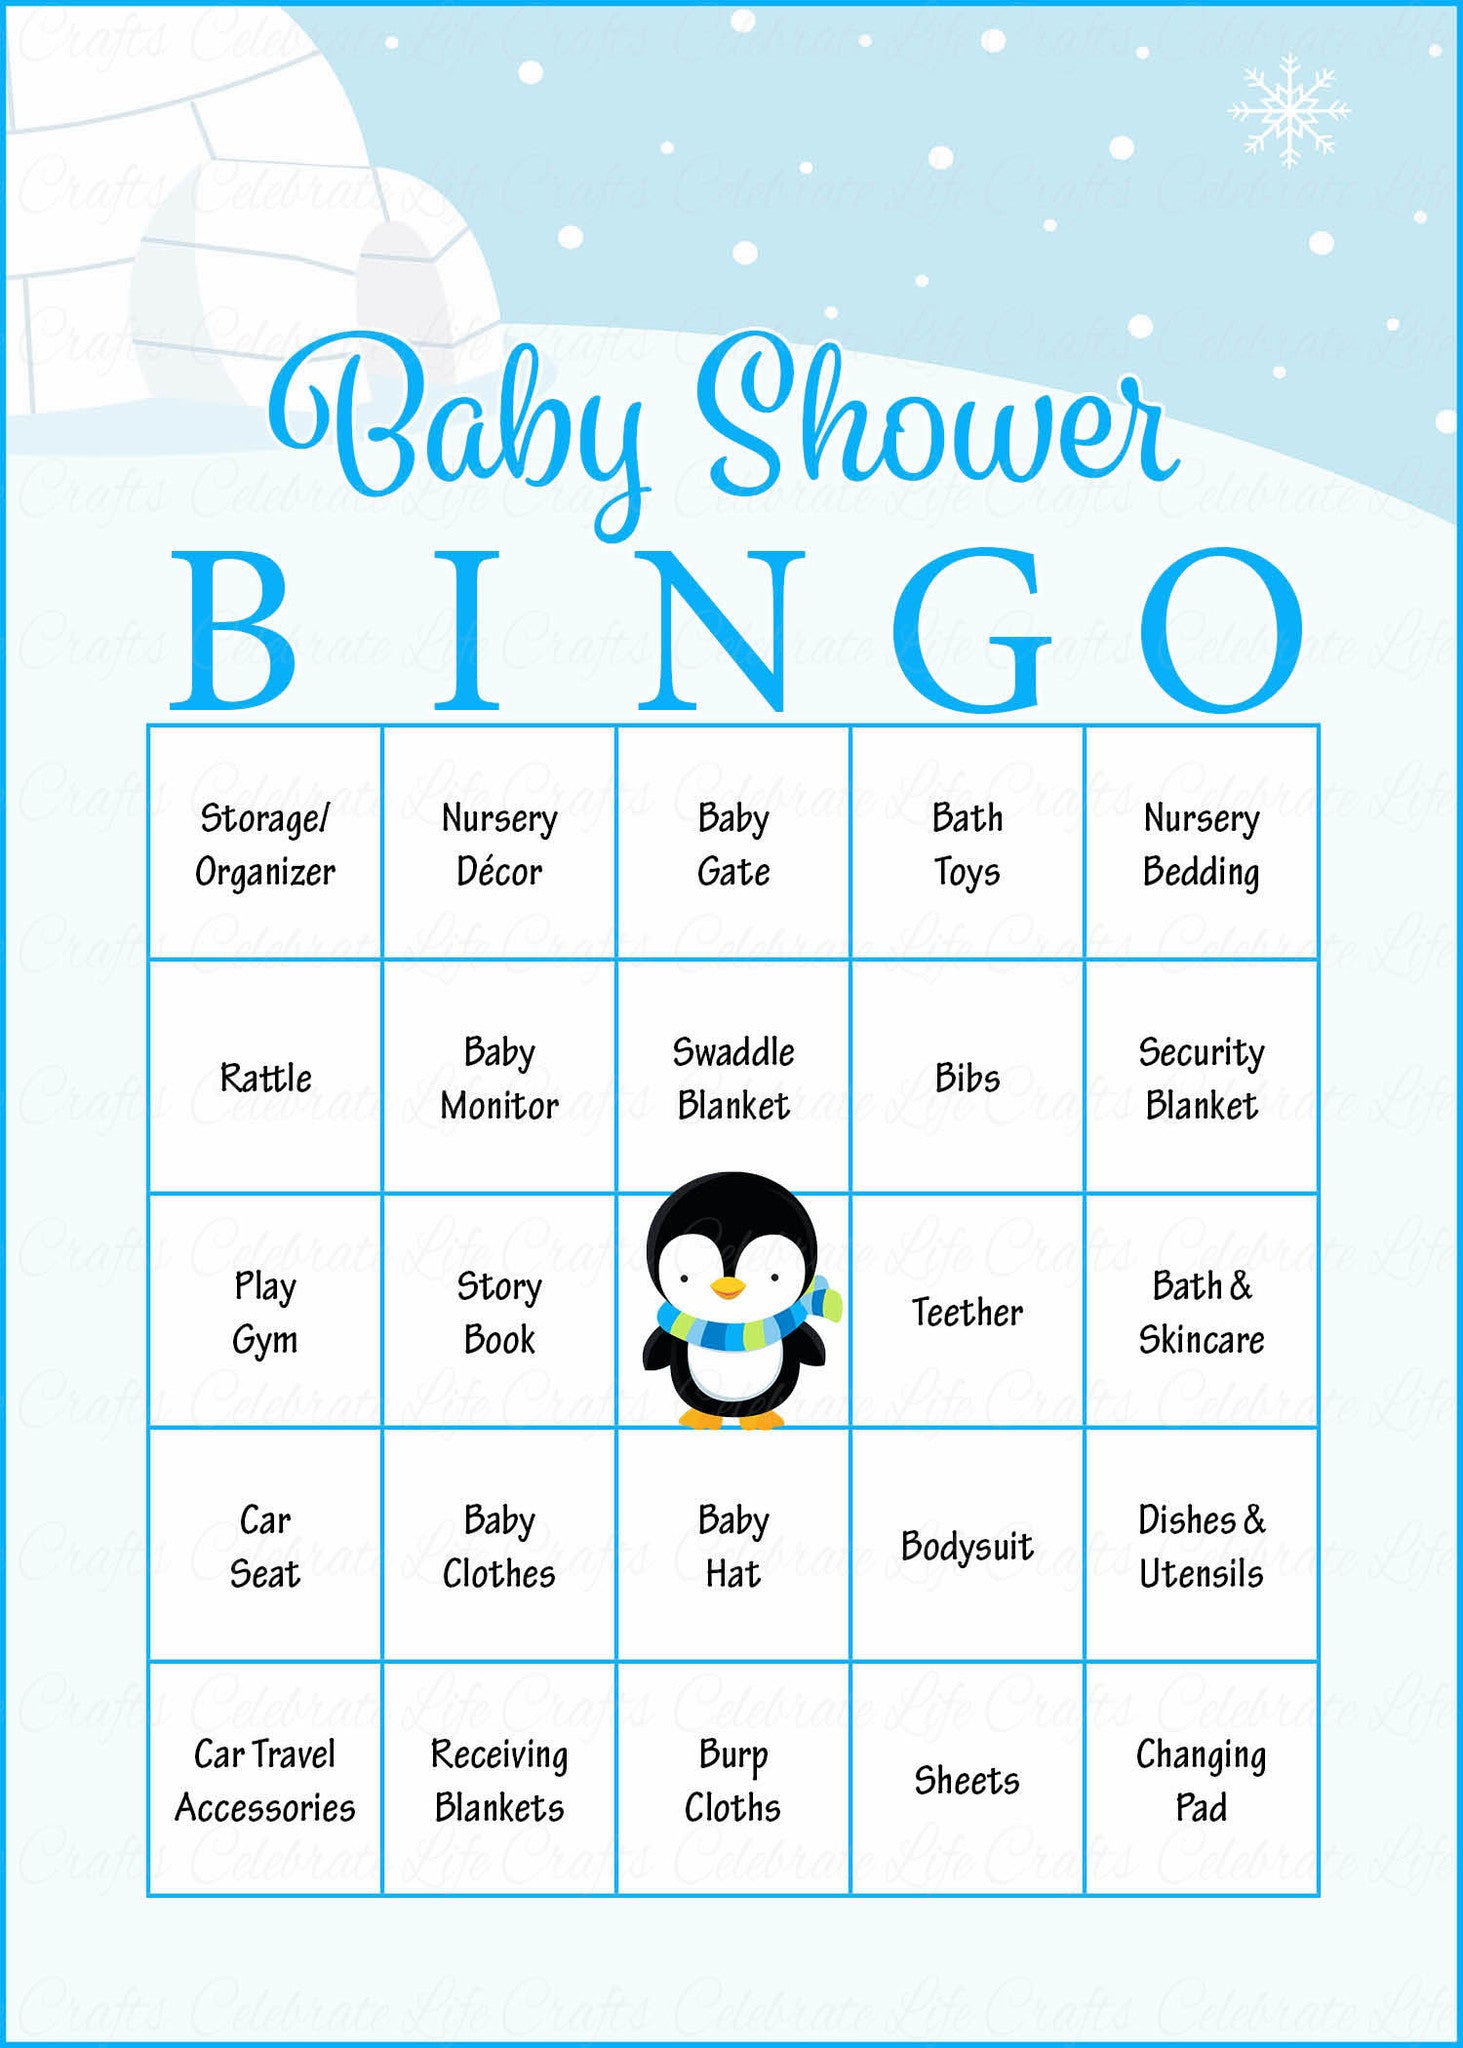 baby-bingo-printable-printable-world-holiday